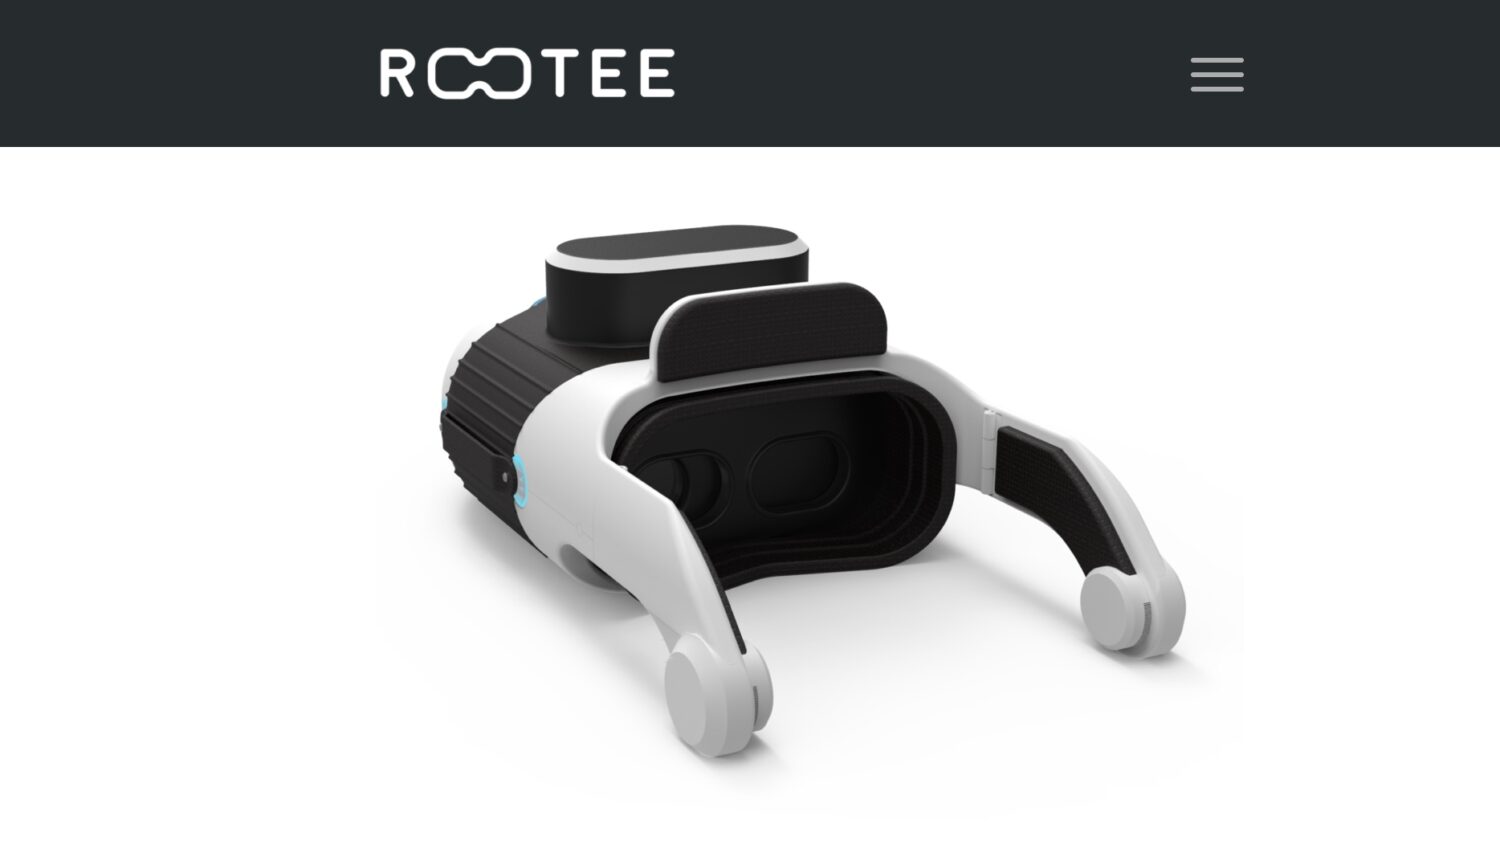 Rootee Health protège les yeux grâce à une solution de test pour les maladies oculaires Rootee Health